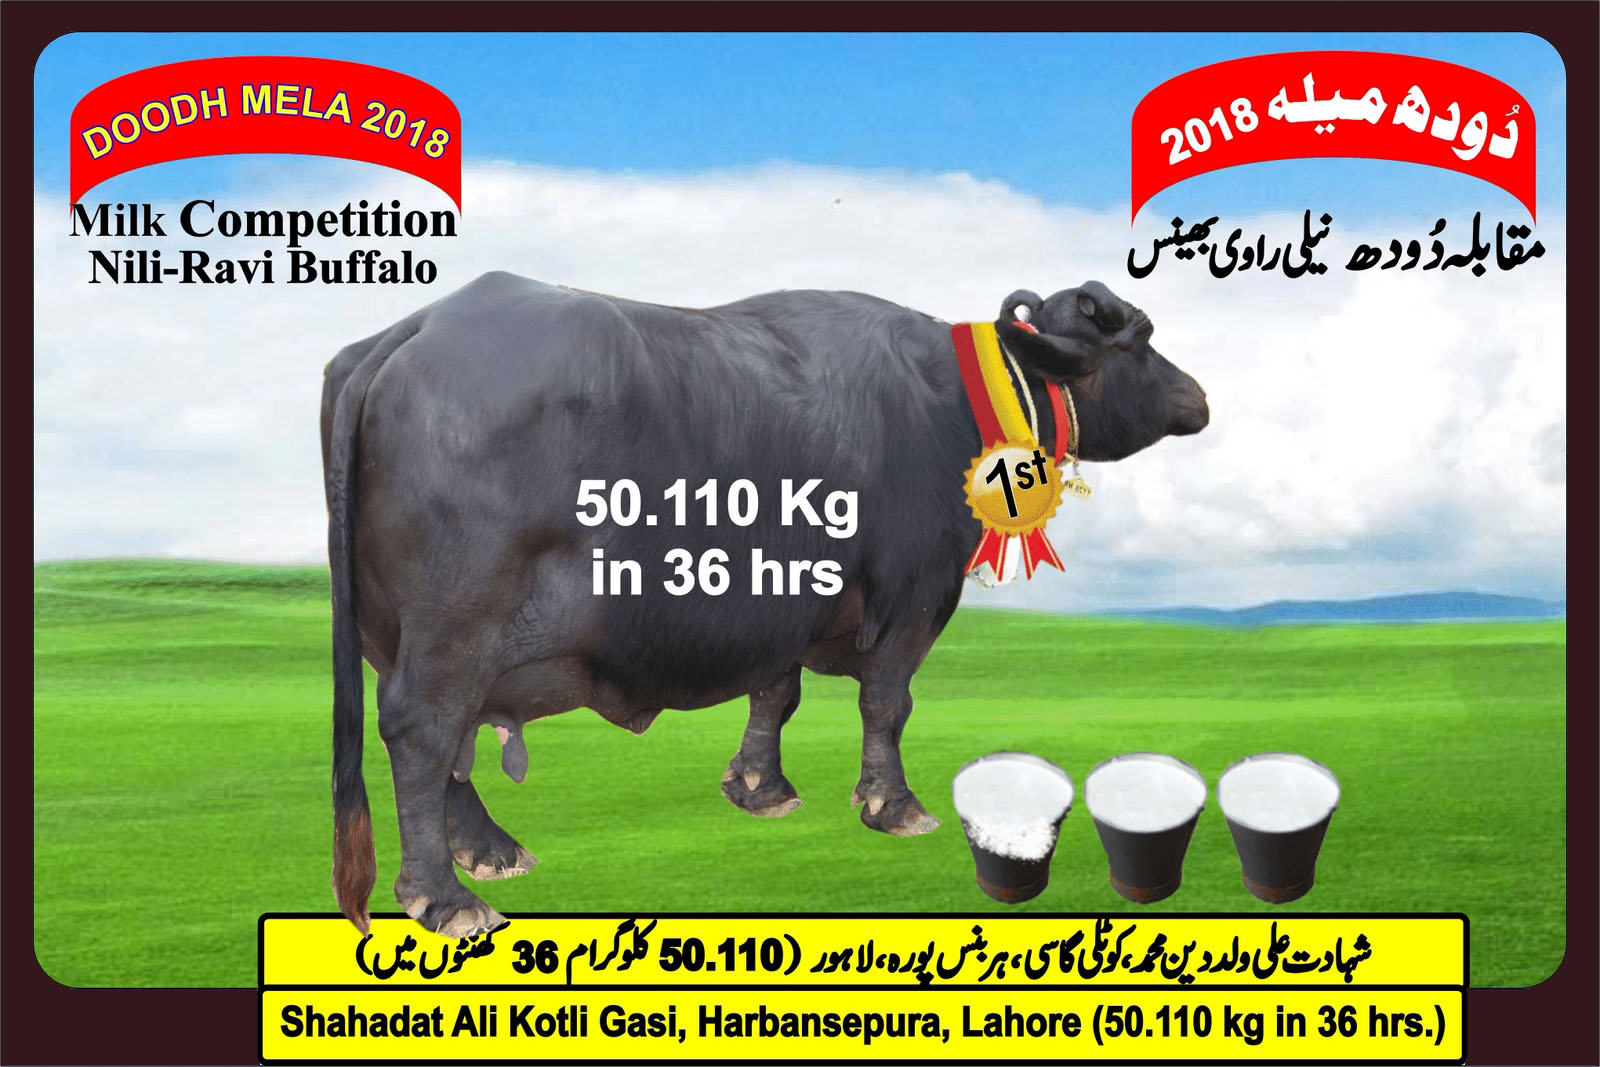 Nili Ravi Buffalo Milk Production Record